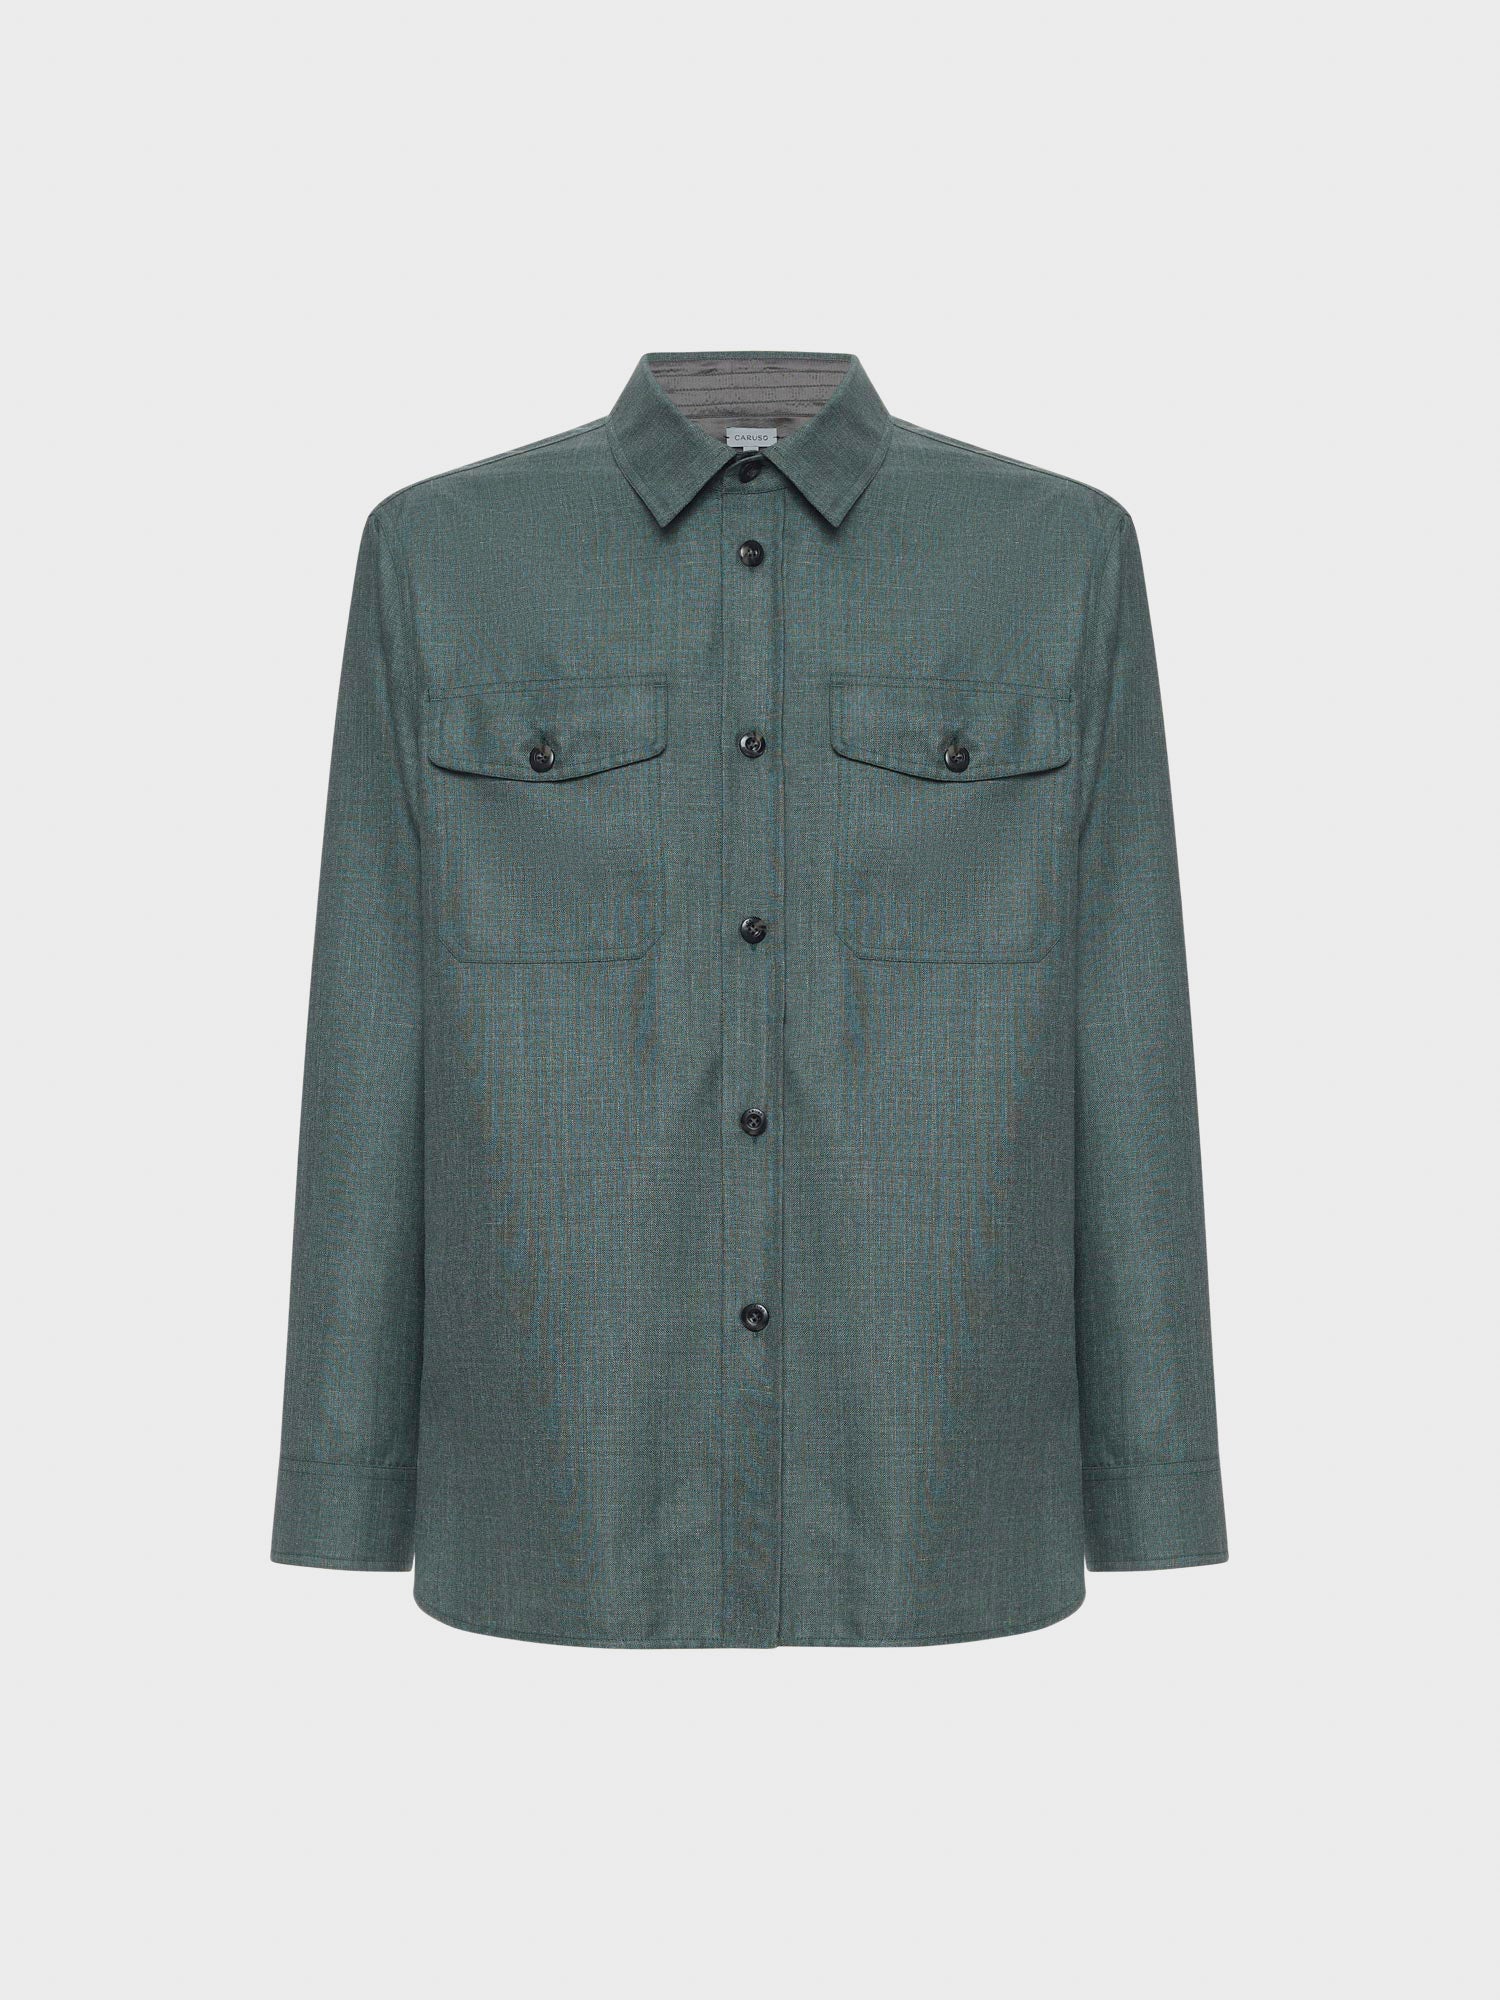 Caruso Menswear Abbigliamento Uomo Overshirt in lana, seta e lino verde still